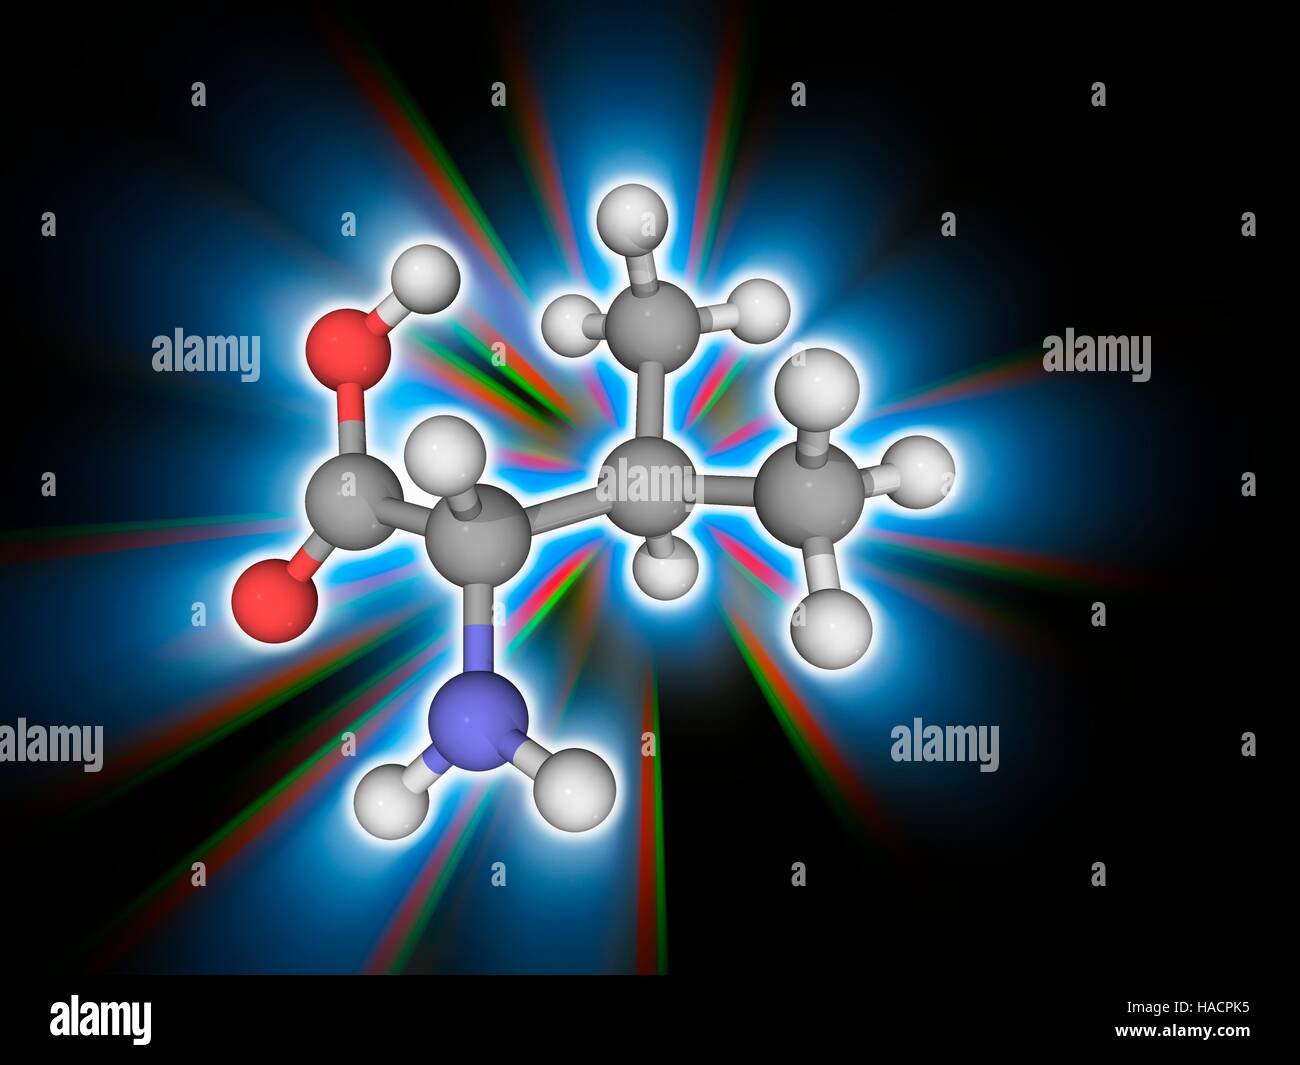 Valin. Molekulares Modell des wesentlichen Alpha-amino Acid Valin (C5. H11. N.O2), eines der 20 proteinogene Aminosäuren. Atome als Kugeln dargestellt werden und sind farblich gekennzeichnet: Kohlenstoff (grau), Wasserstoff (weiß), Stickstoff (blau) und Sauerstoff (rot). Abbildung. Stockfoto